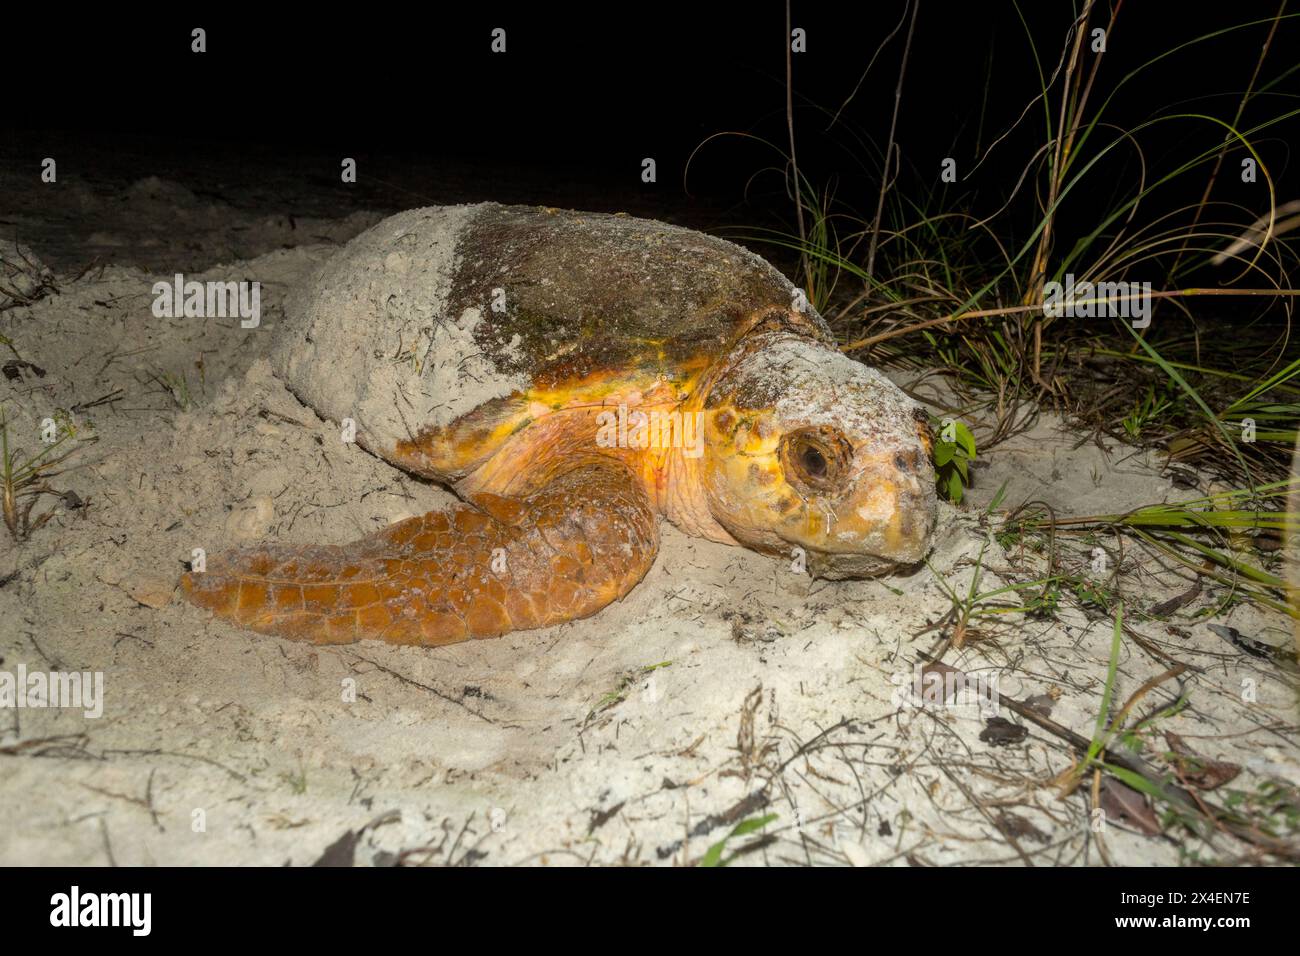 Eine Karettschildkröte begräbt ihr Nest, nachdem sie an einem Strand in Florida Eier gelegt hat. Stockfoto